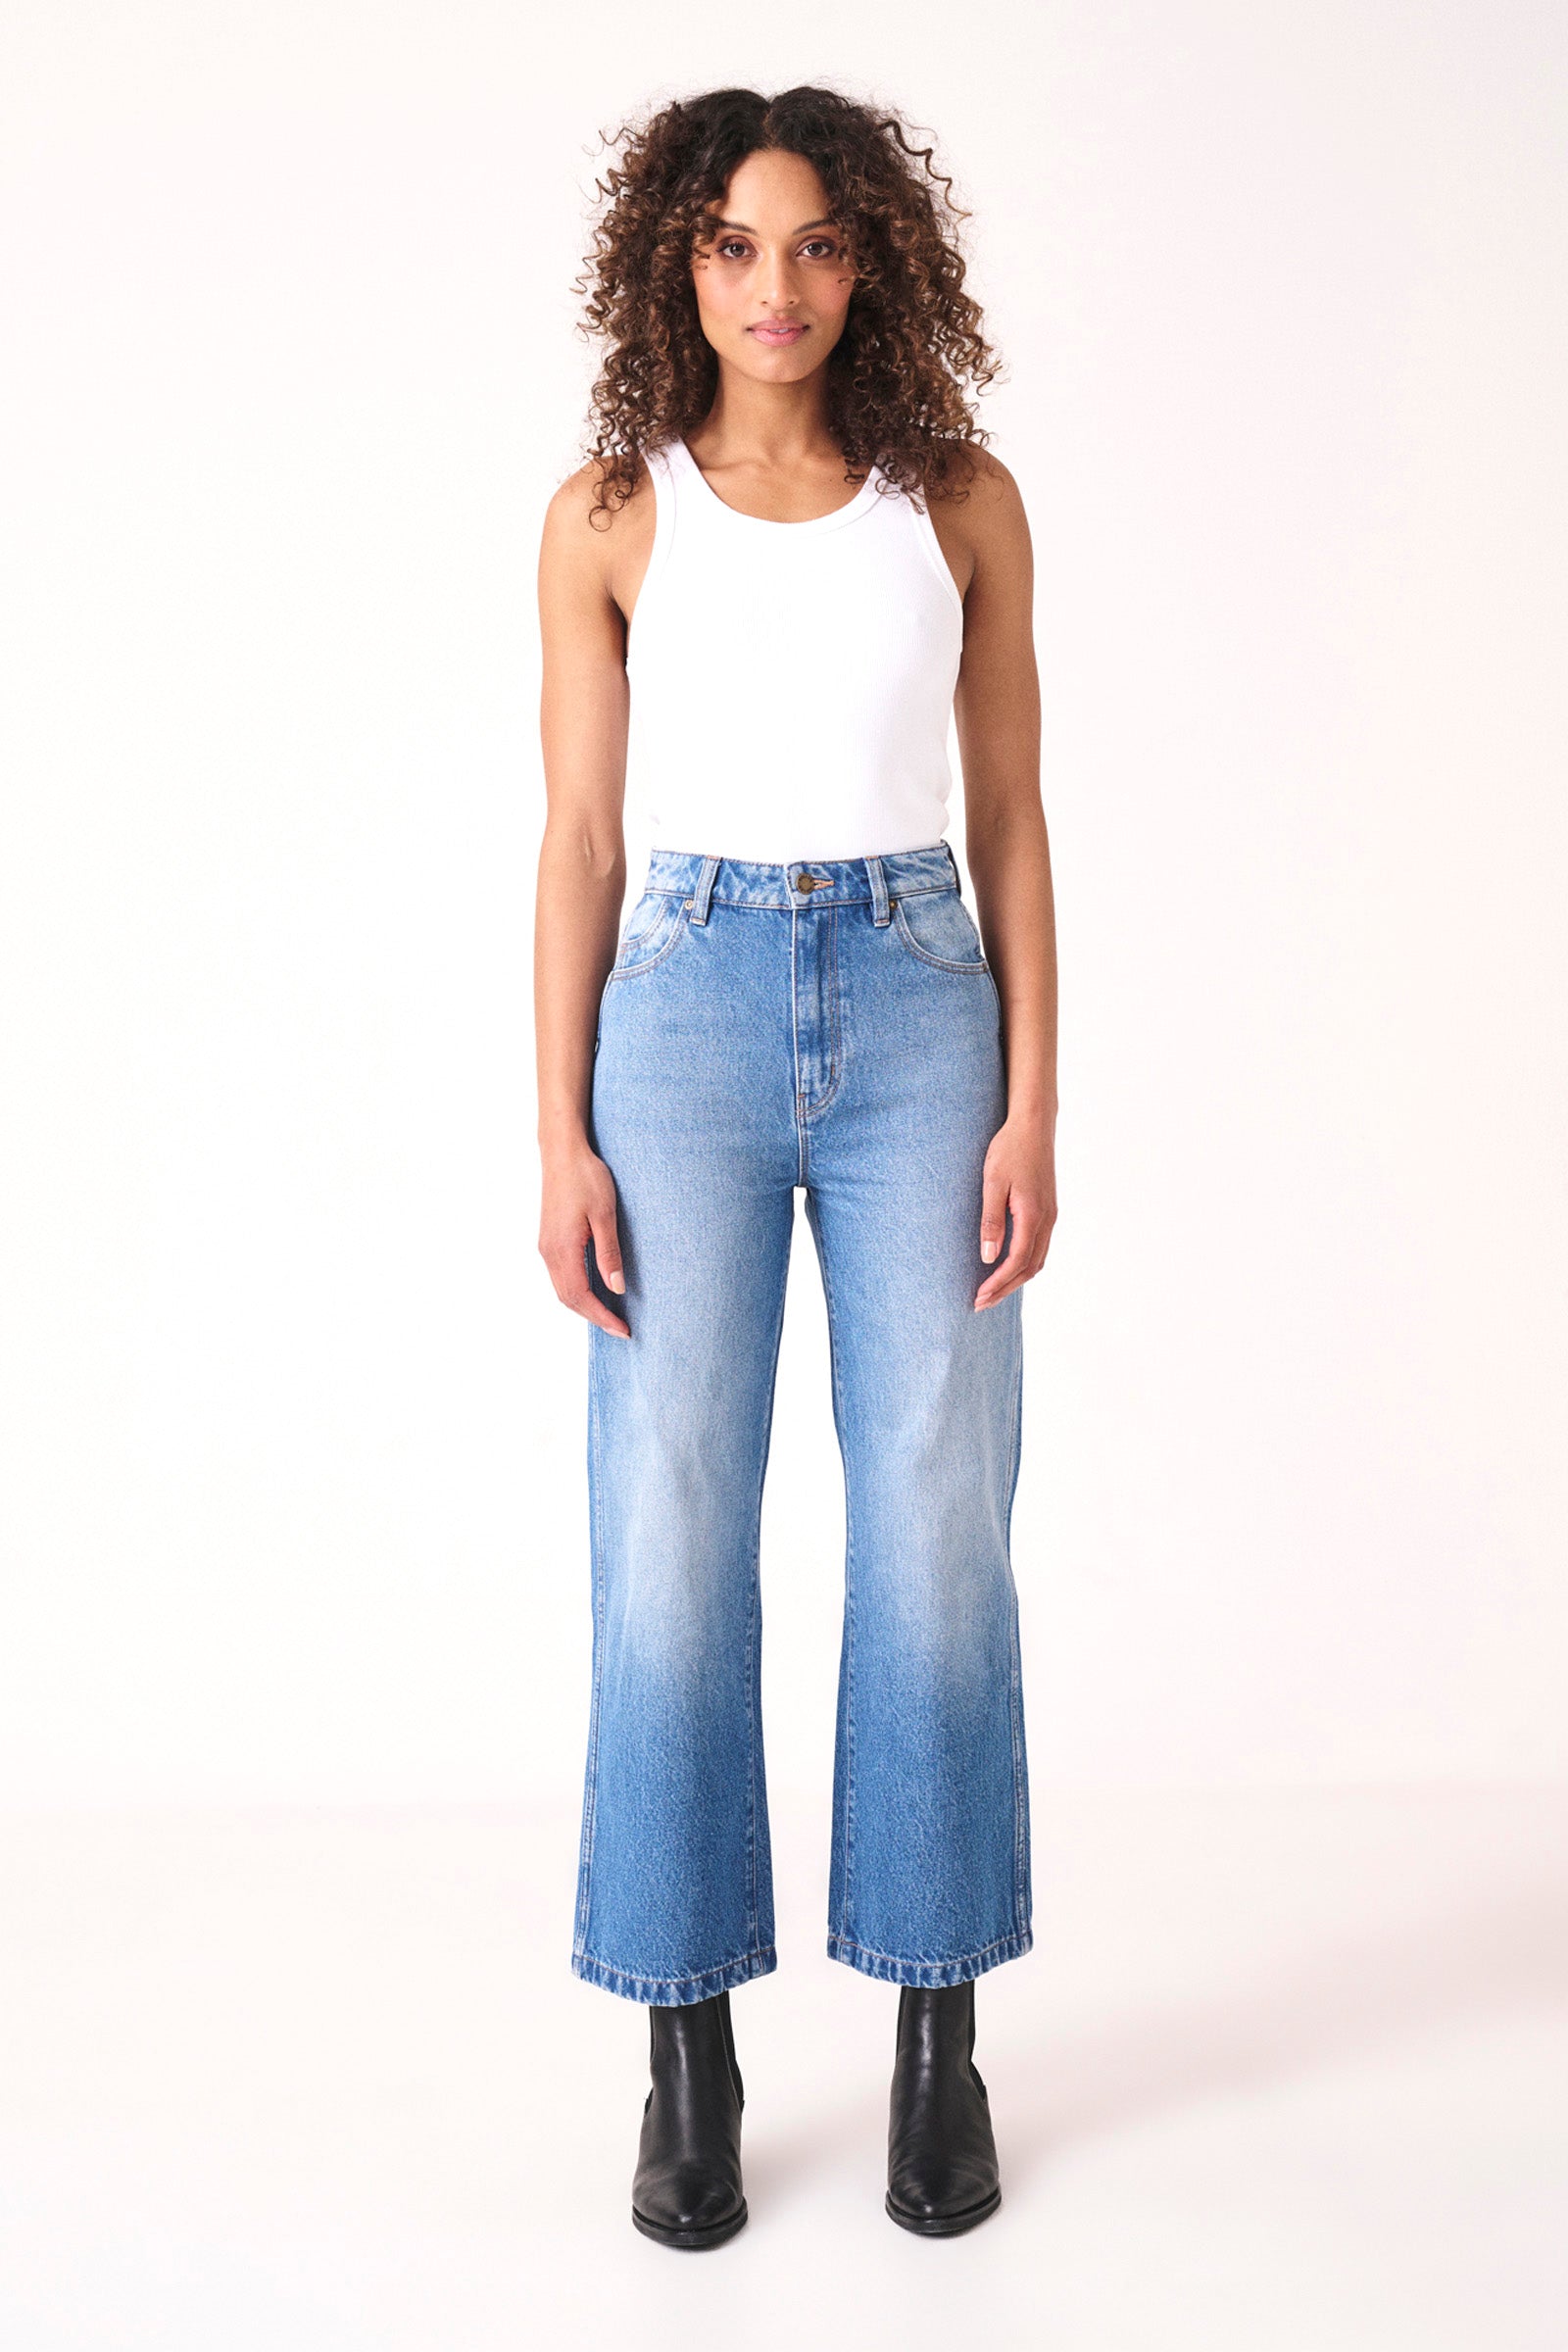 Women's Jeans | Buy Women's Denim Jeans | Rolla's US